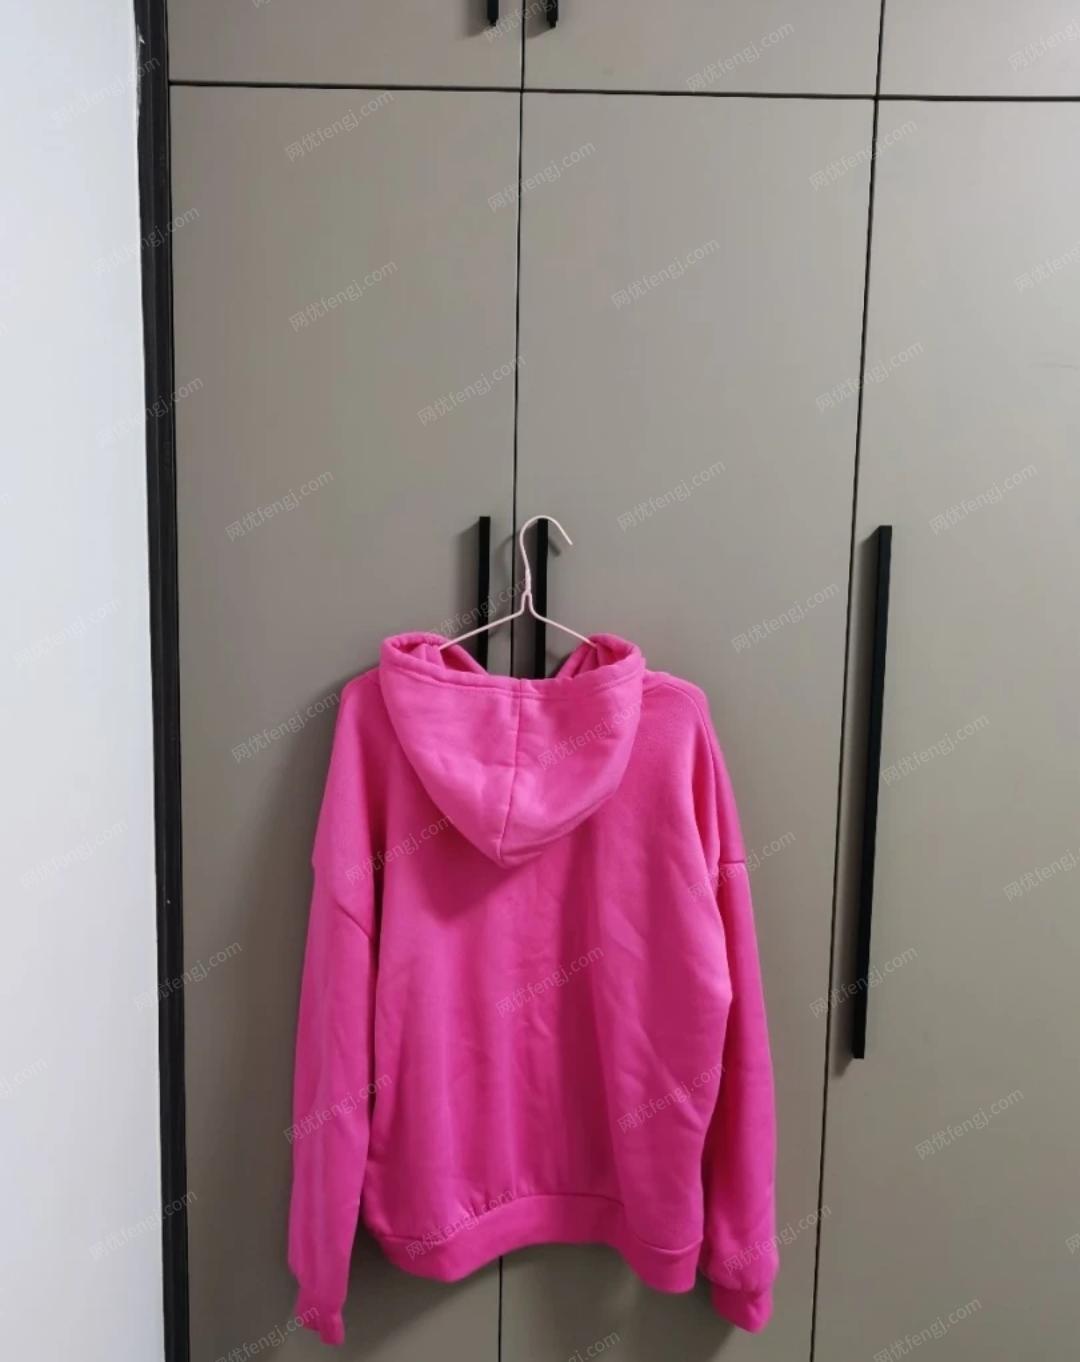 粉色爱心加绒卫衣出售.试穿过一次